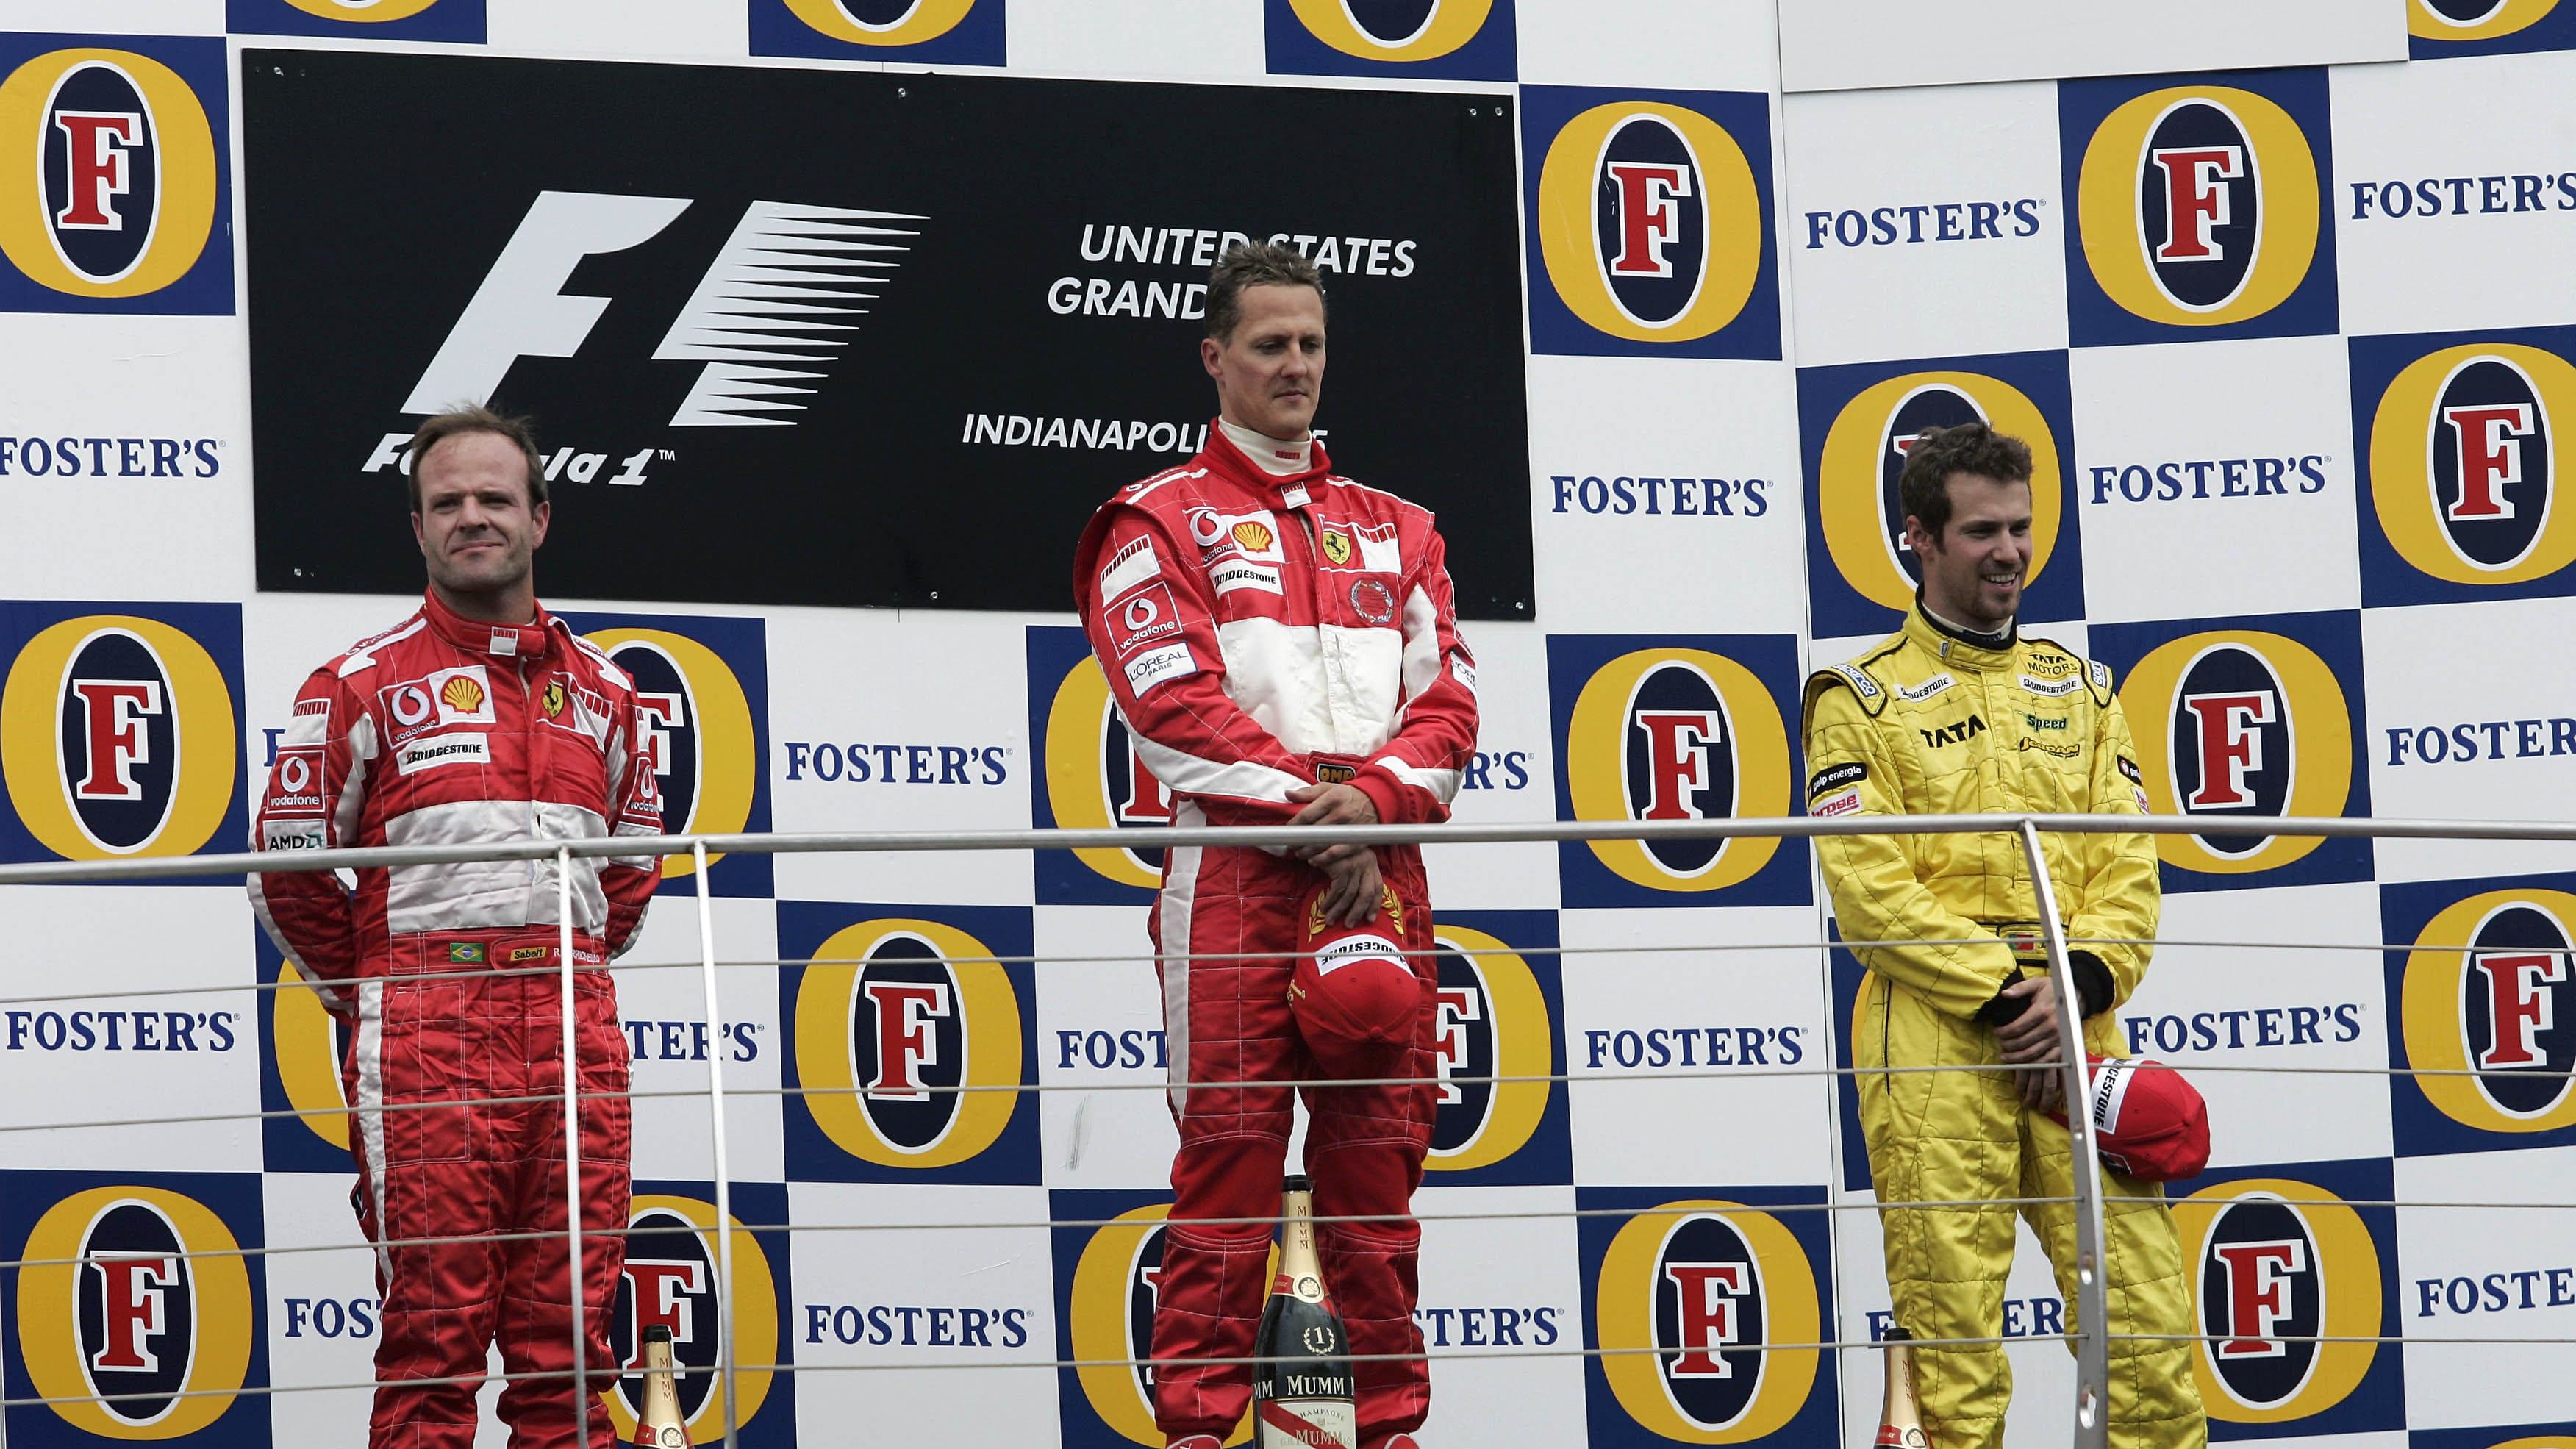 June 19, 2005; Indianapolis, IN, USA; Rubens Barrichello (left) of Scuderia Ferrari Marlboro,